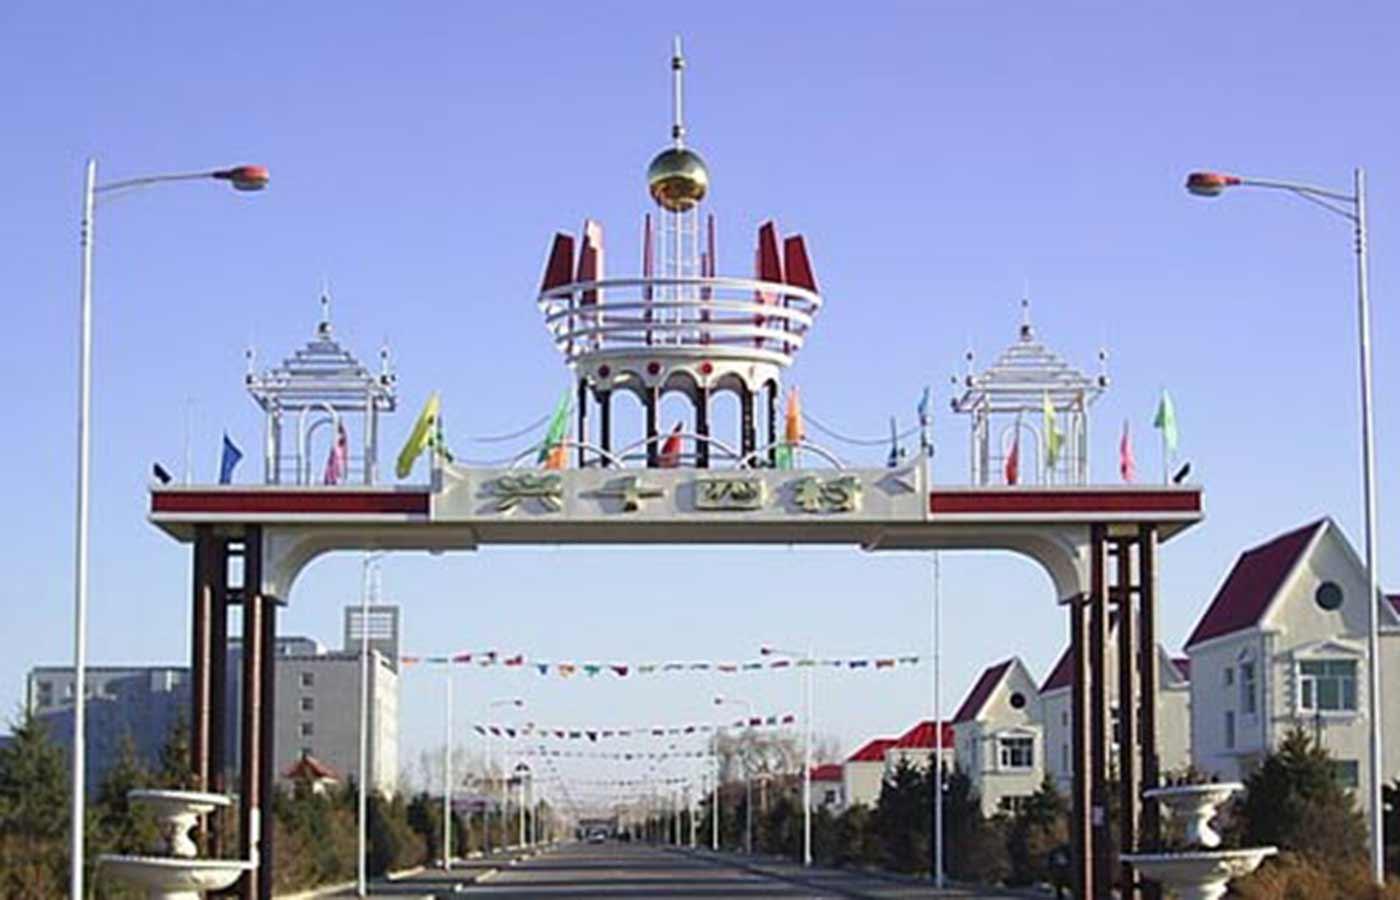 黑龙江省齐齐哈尔市甘南县音河乡兴十四村素有“龙江第一村”的美誉，位于黑龙江省西北部，甘南县城东南 17公里处，是 1956年由山东临沂地区移民组建起来的移民村。